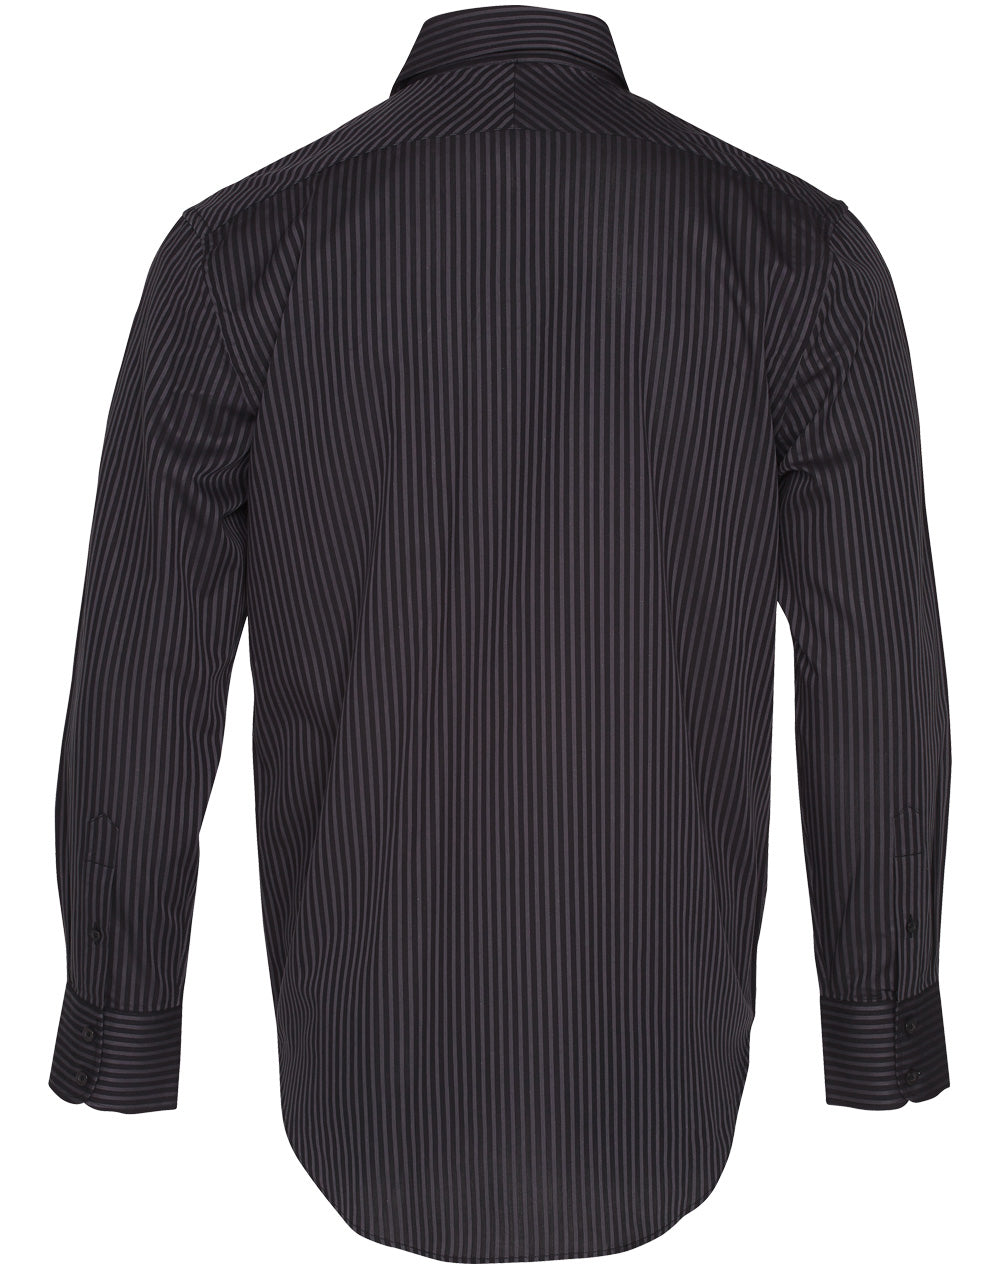 Benchmark M7132 Men's Dobby Stripe long sleeve shirt